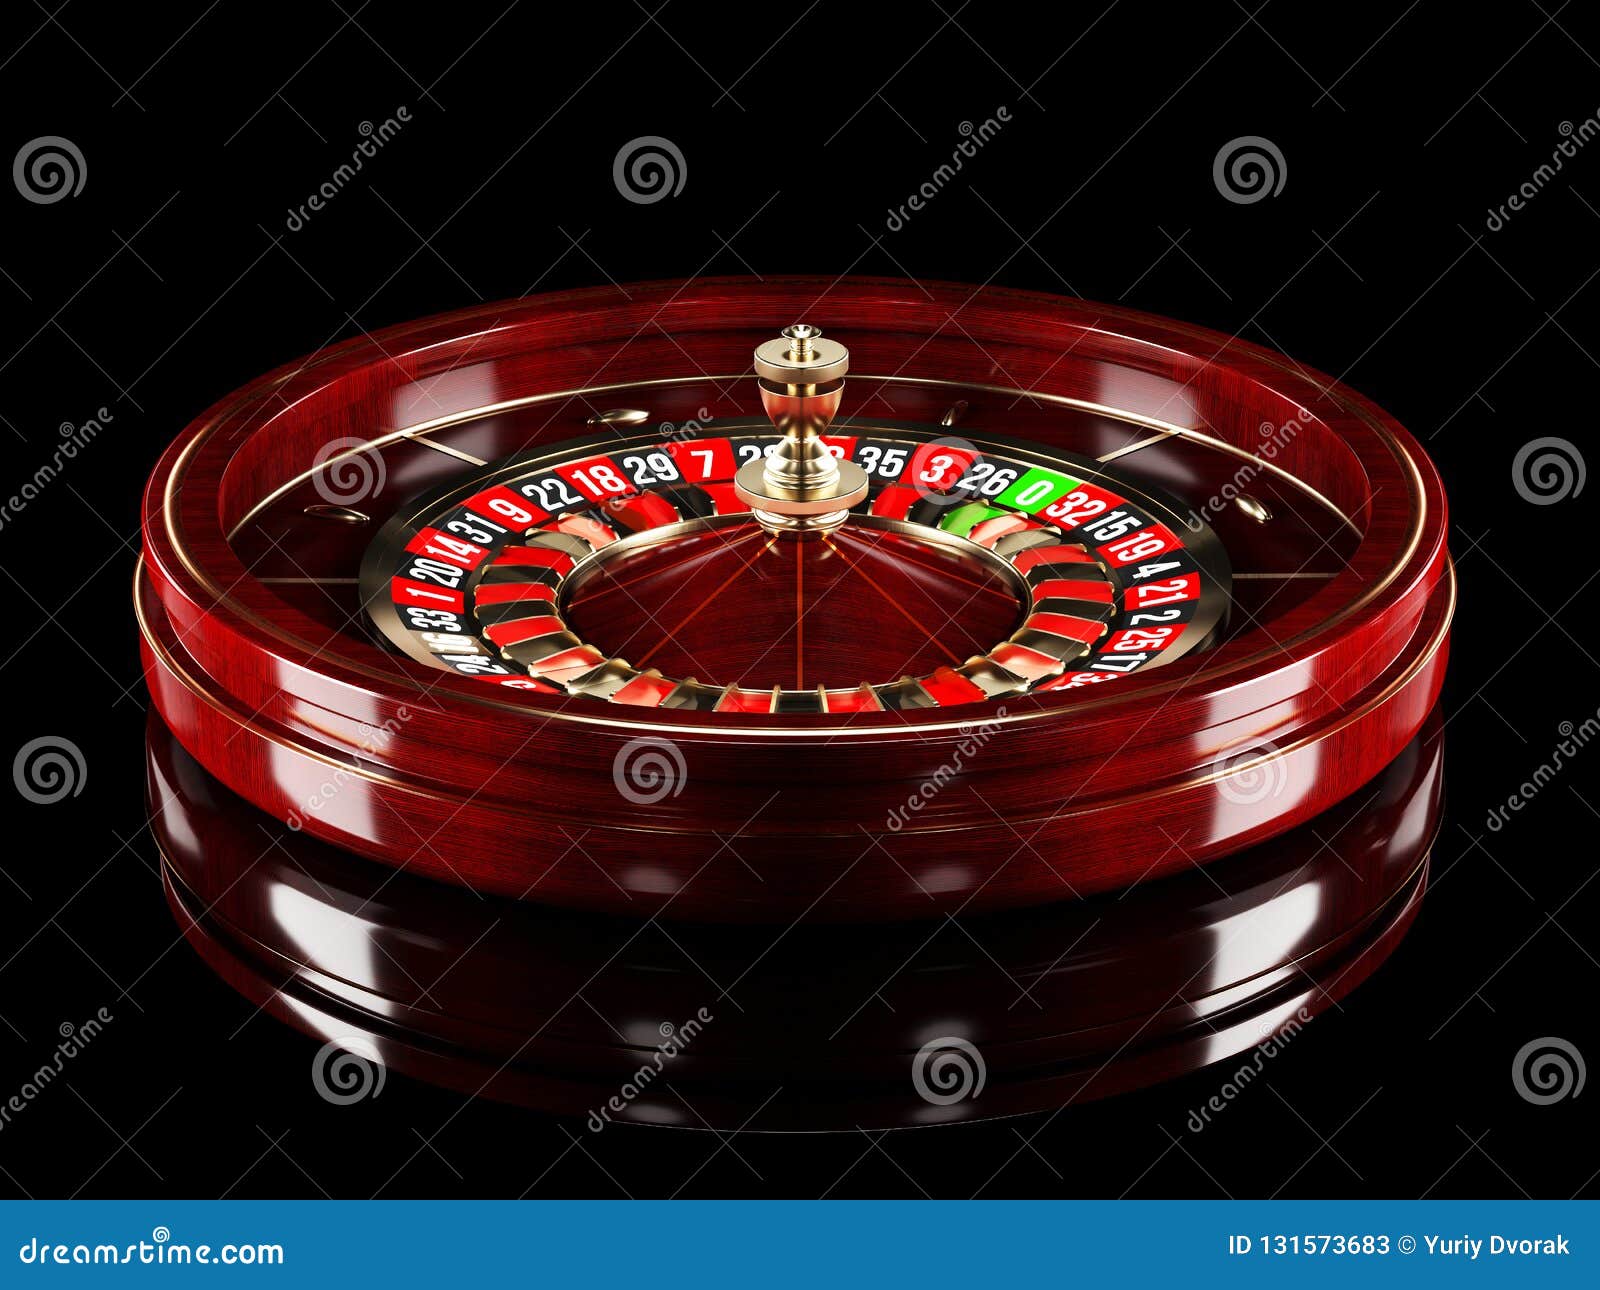 Advertencia: estos 9 errores destruirán su jugar juegos de casino de ruleta